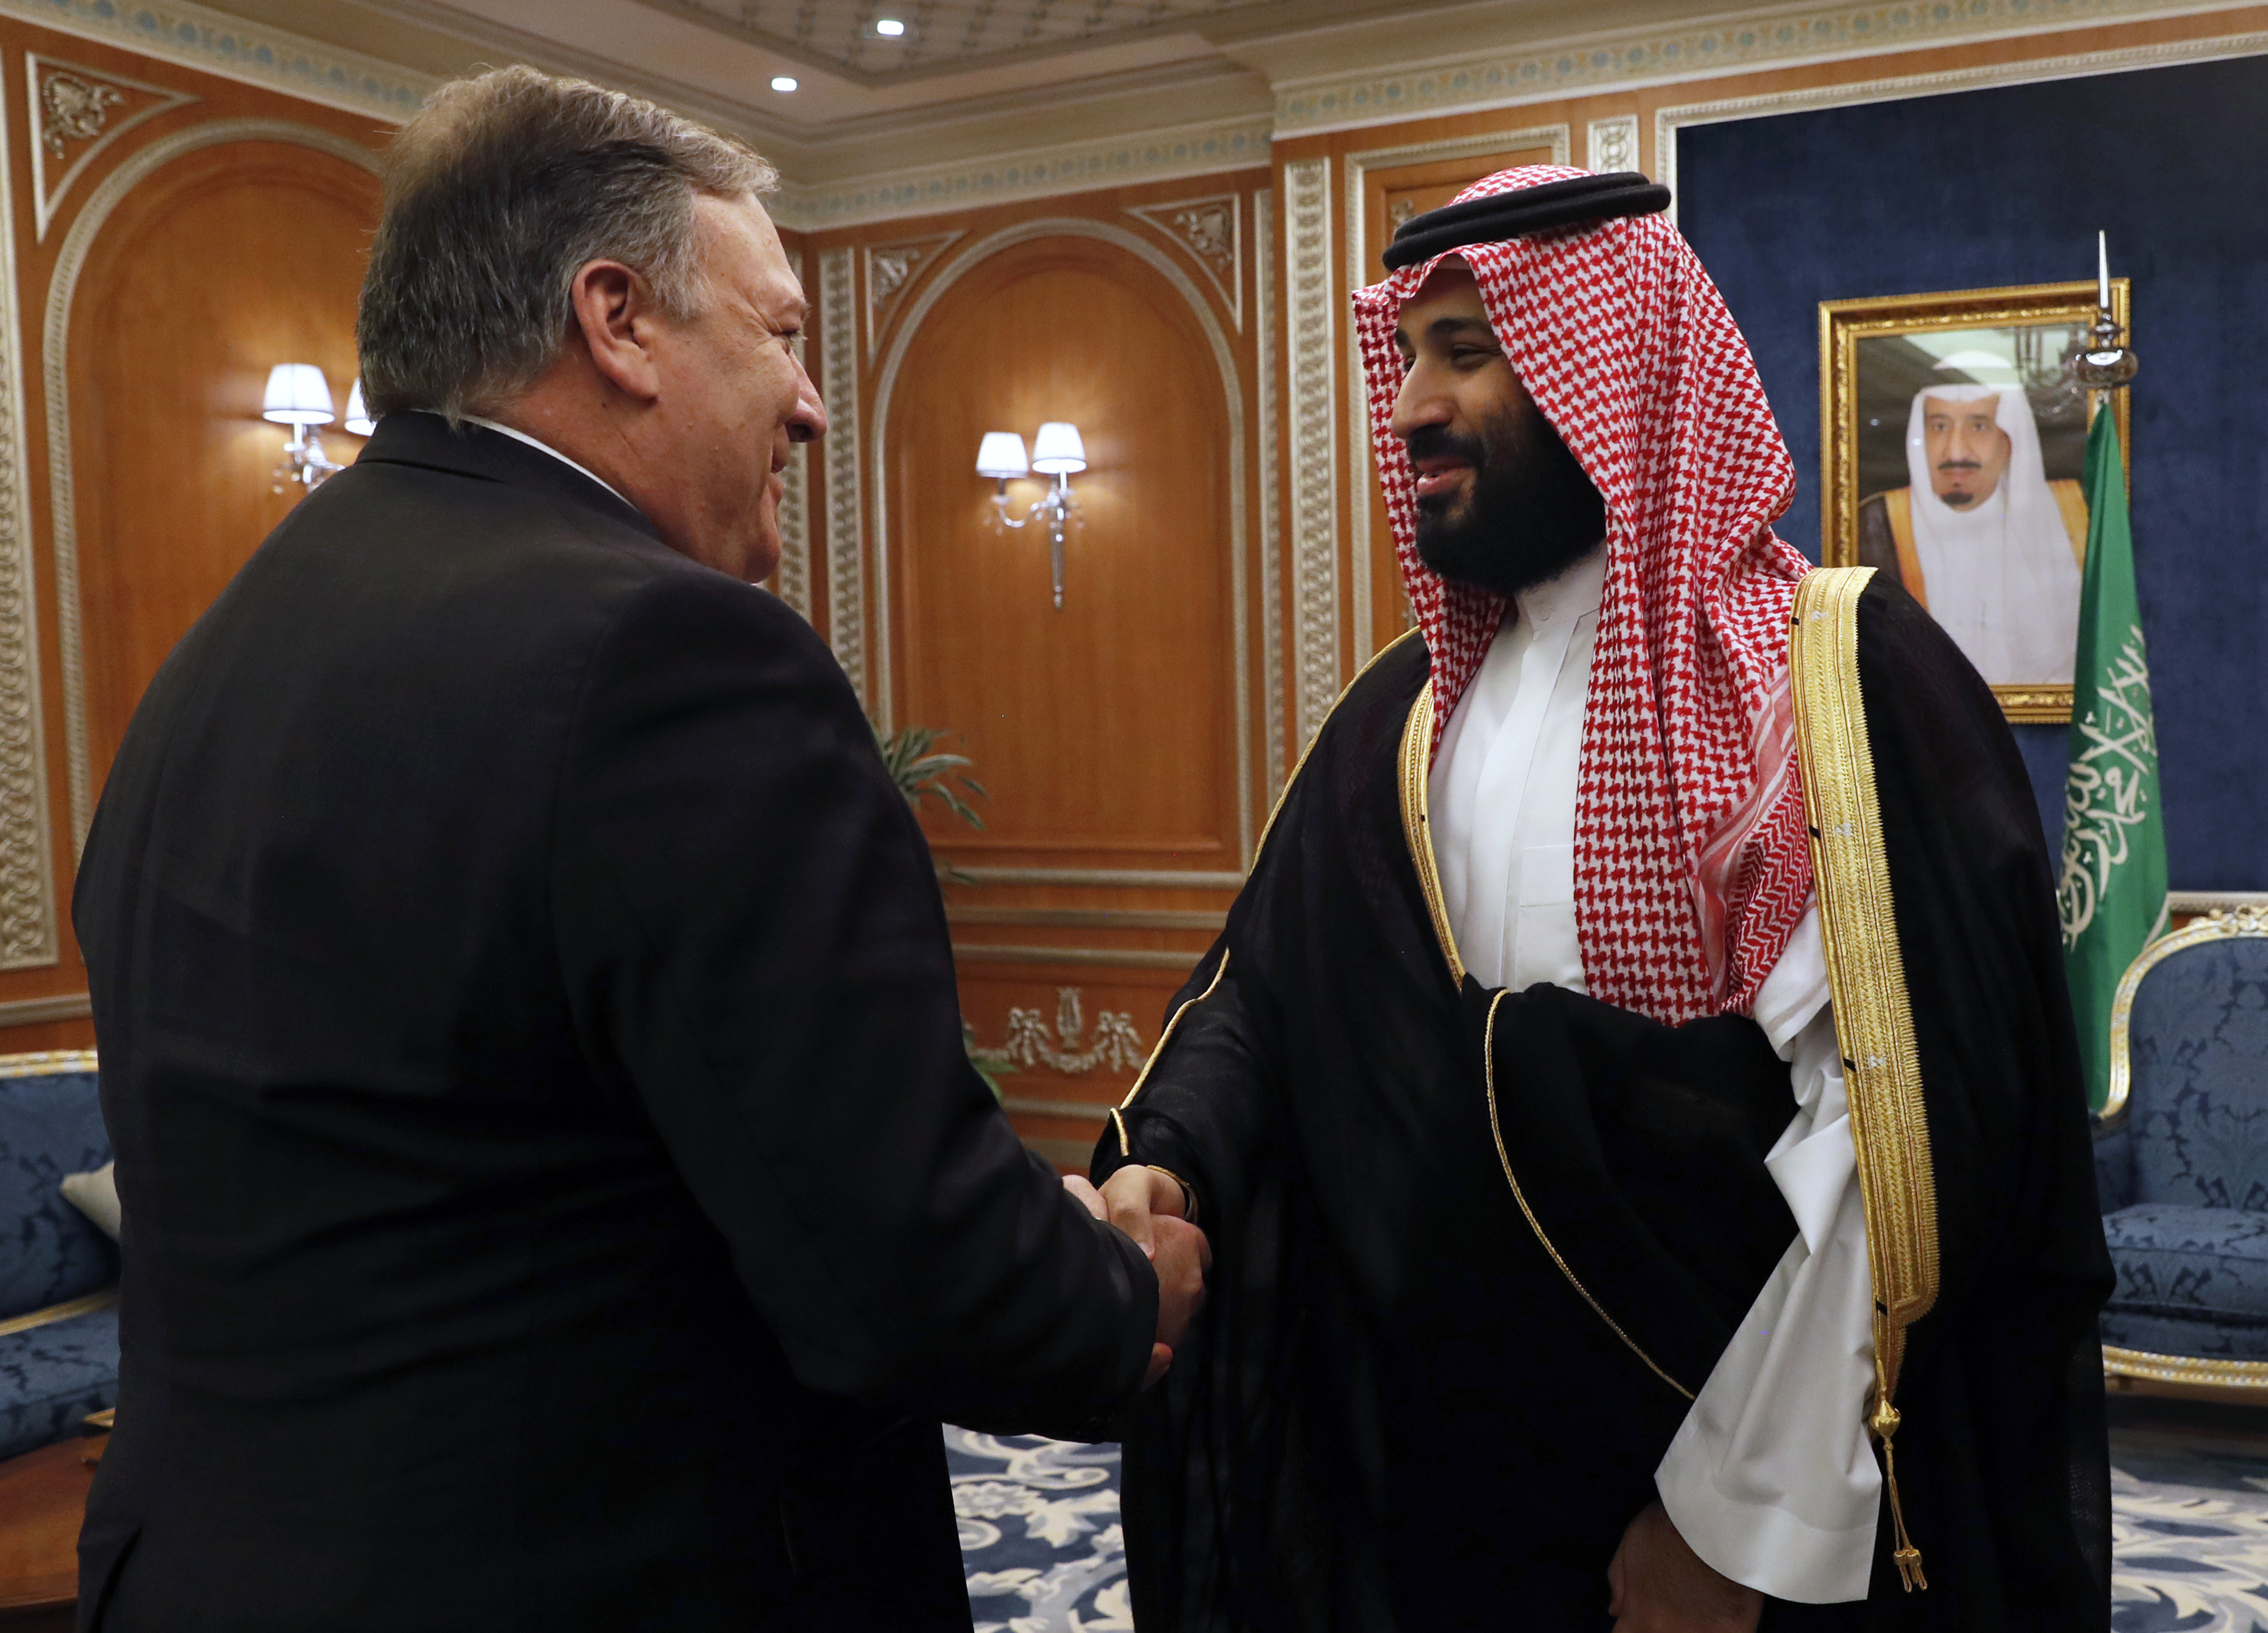 Mike Pompeo: Arabia Saudita está dispuesta a una exhaustiva investigación sobre Khashoggi (Fotos)